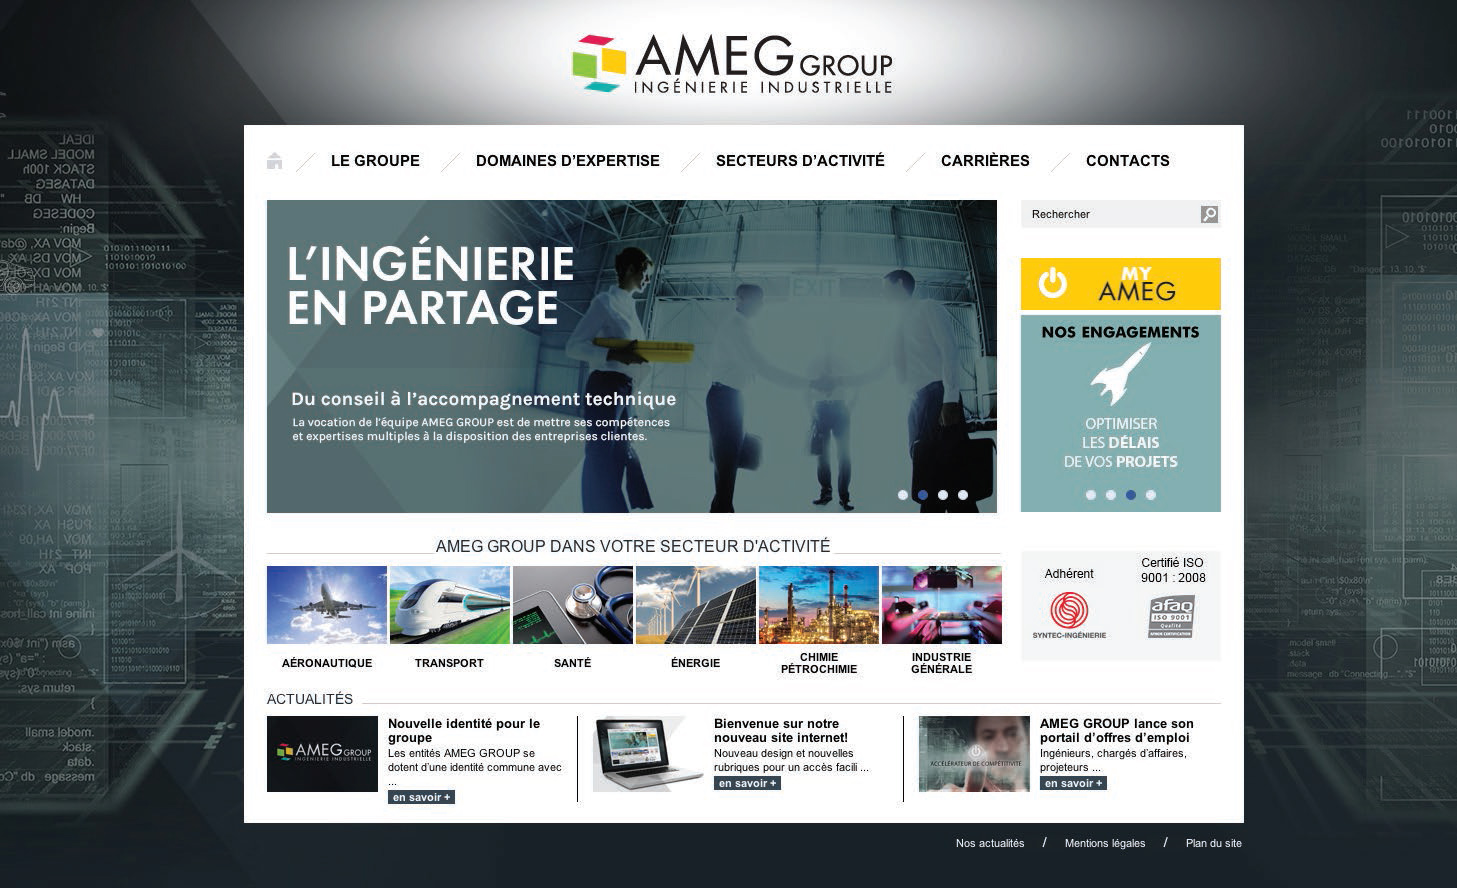 AMEG group